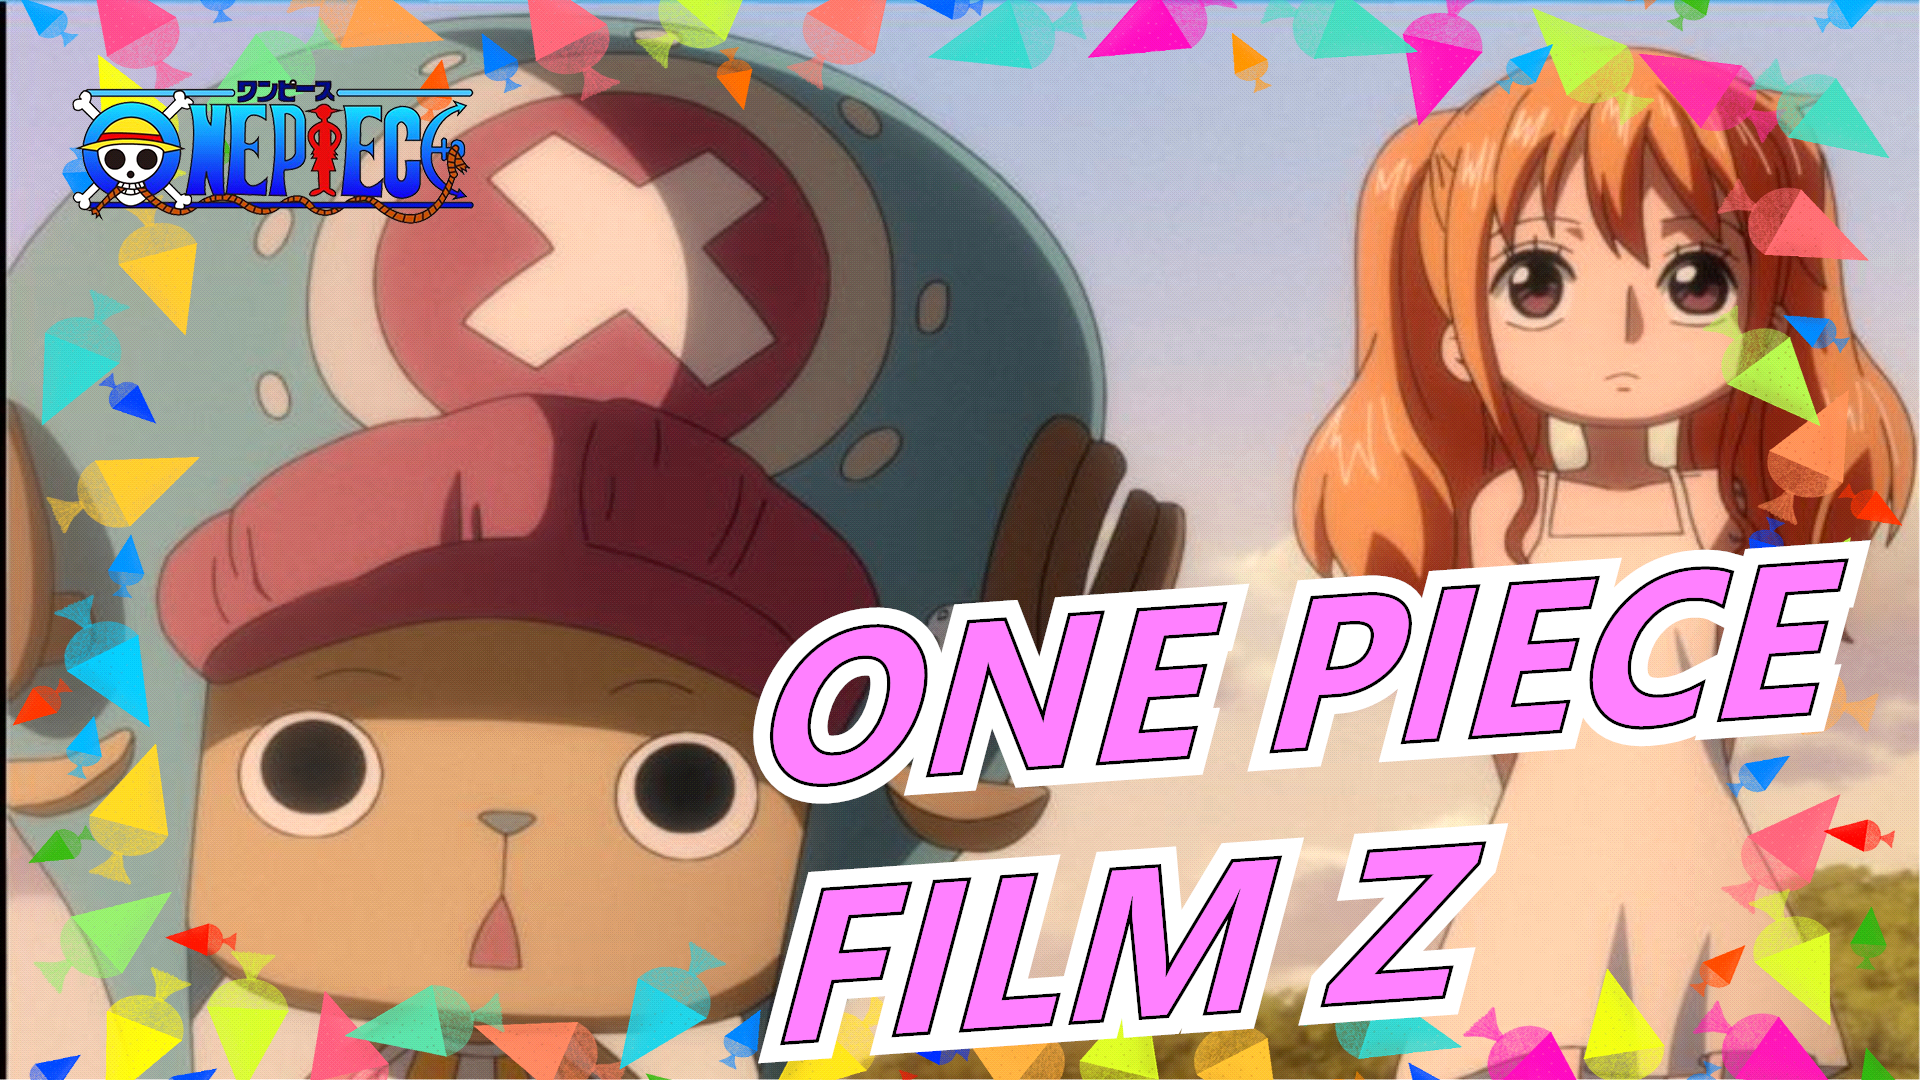 ONE PIECE The Movie 12] FILM Z [MAD] - BiliBili